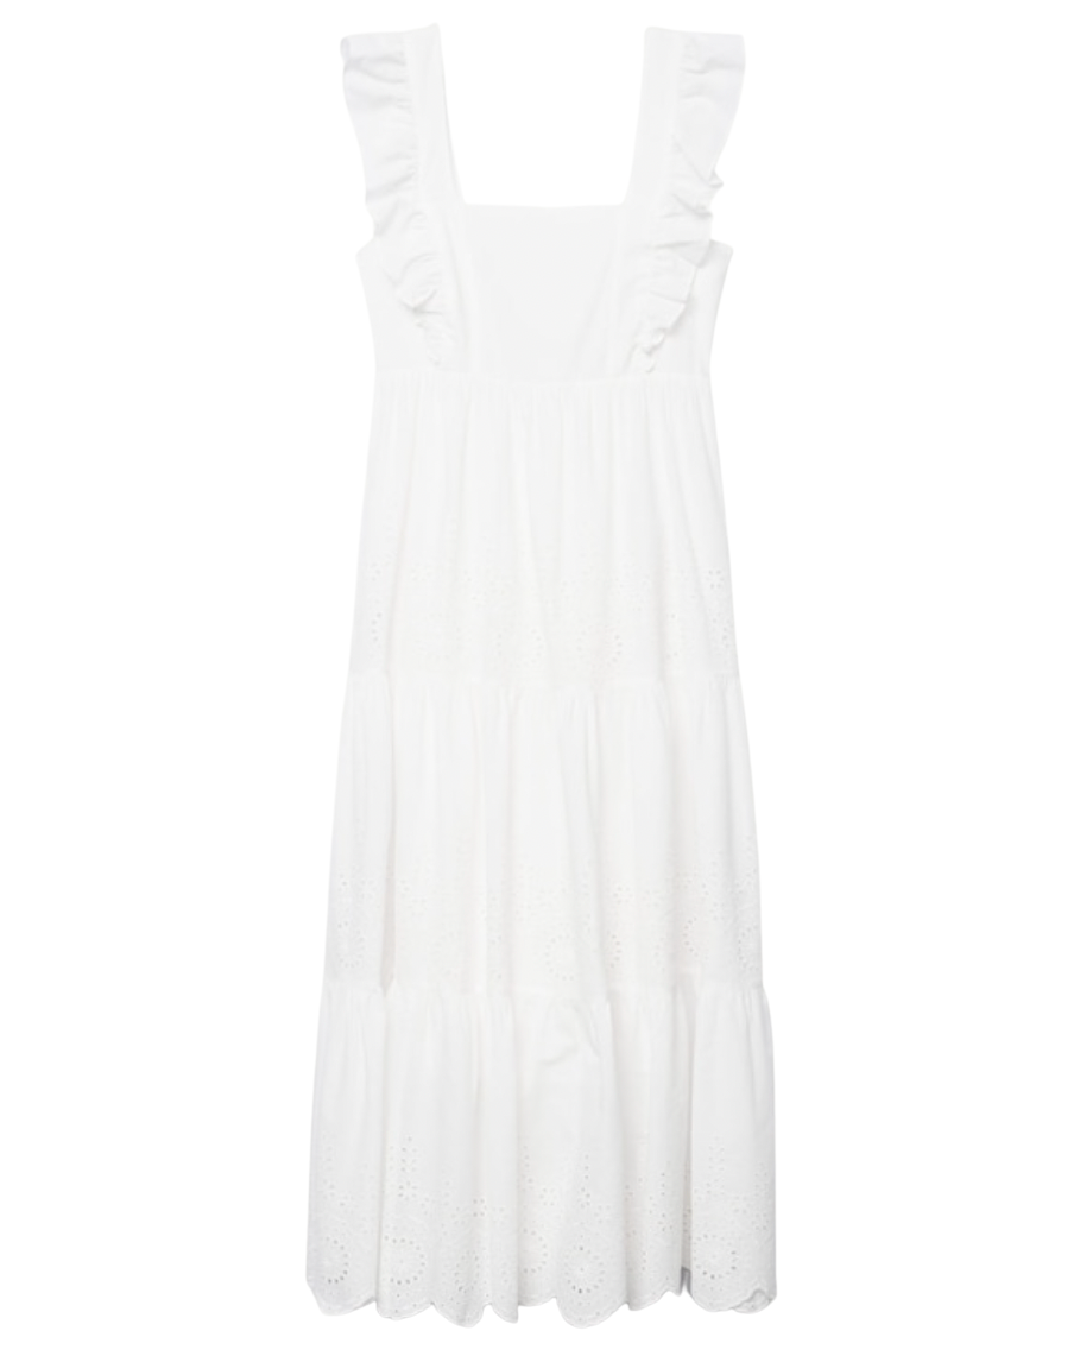 12 White Summer Dresses – Natalie Yerger